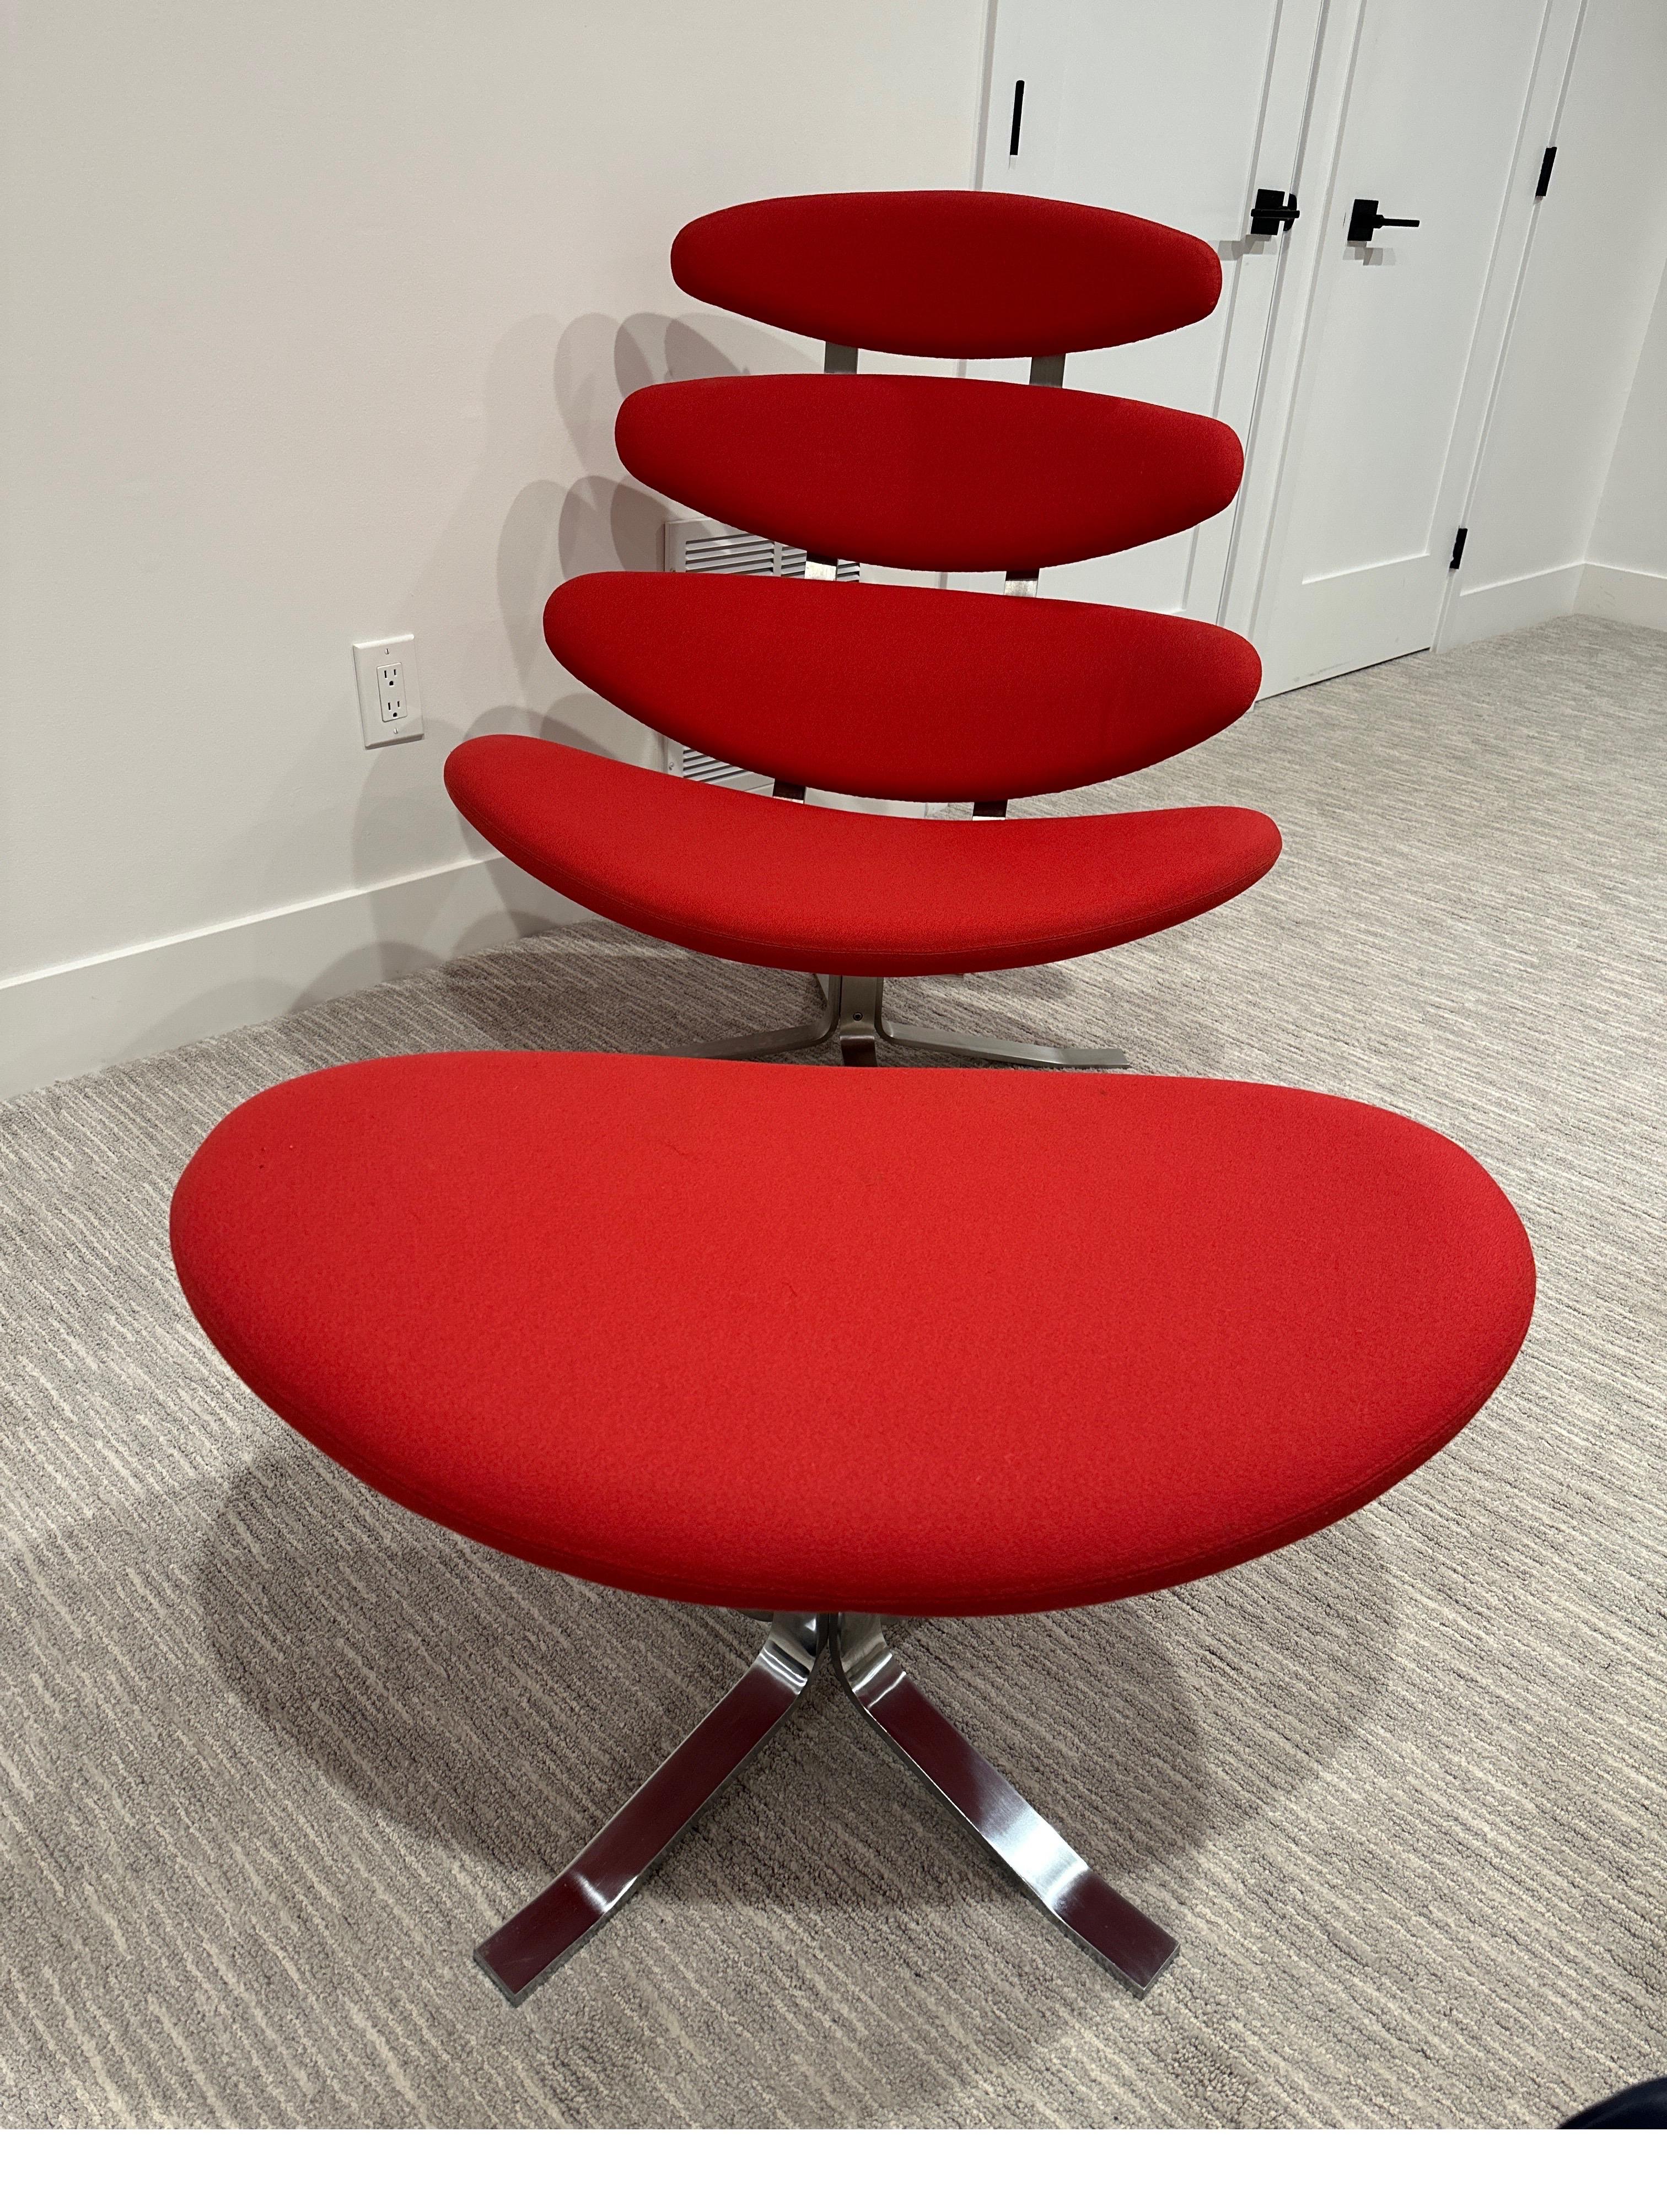 Poul M. Volther Corona Chair für Erik Jørgensen in den 1960er Jahren. Vier gepolsterte Kissen in leuchtendem Rot erheben sich auf einem Edelstahlrahmen, der am Fuß des Sessels drehbar ist. So entsteht ein bequemer und optisch ansprechender